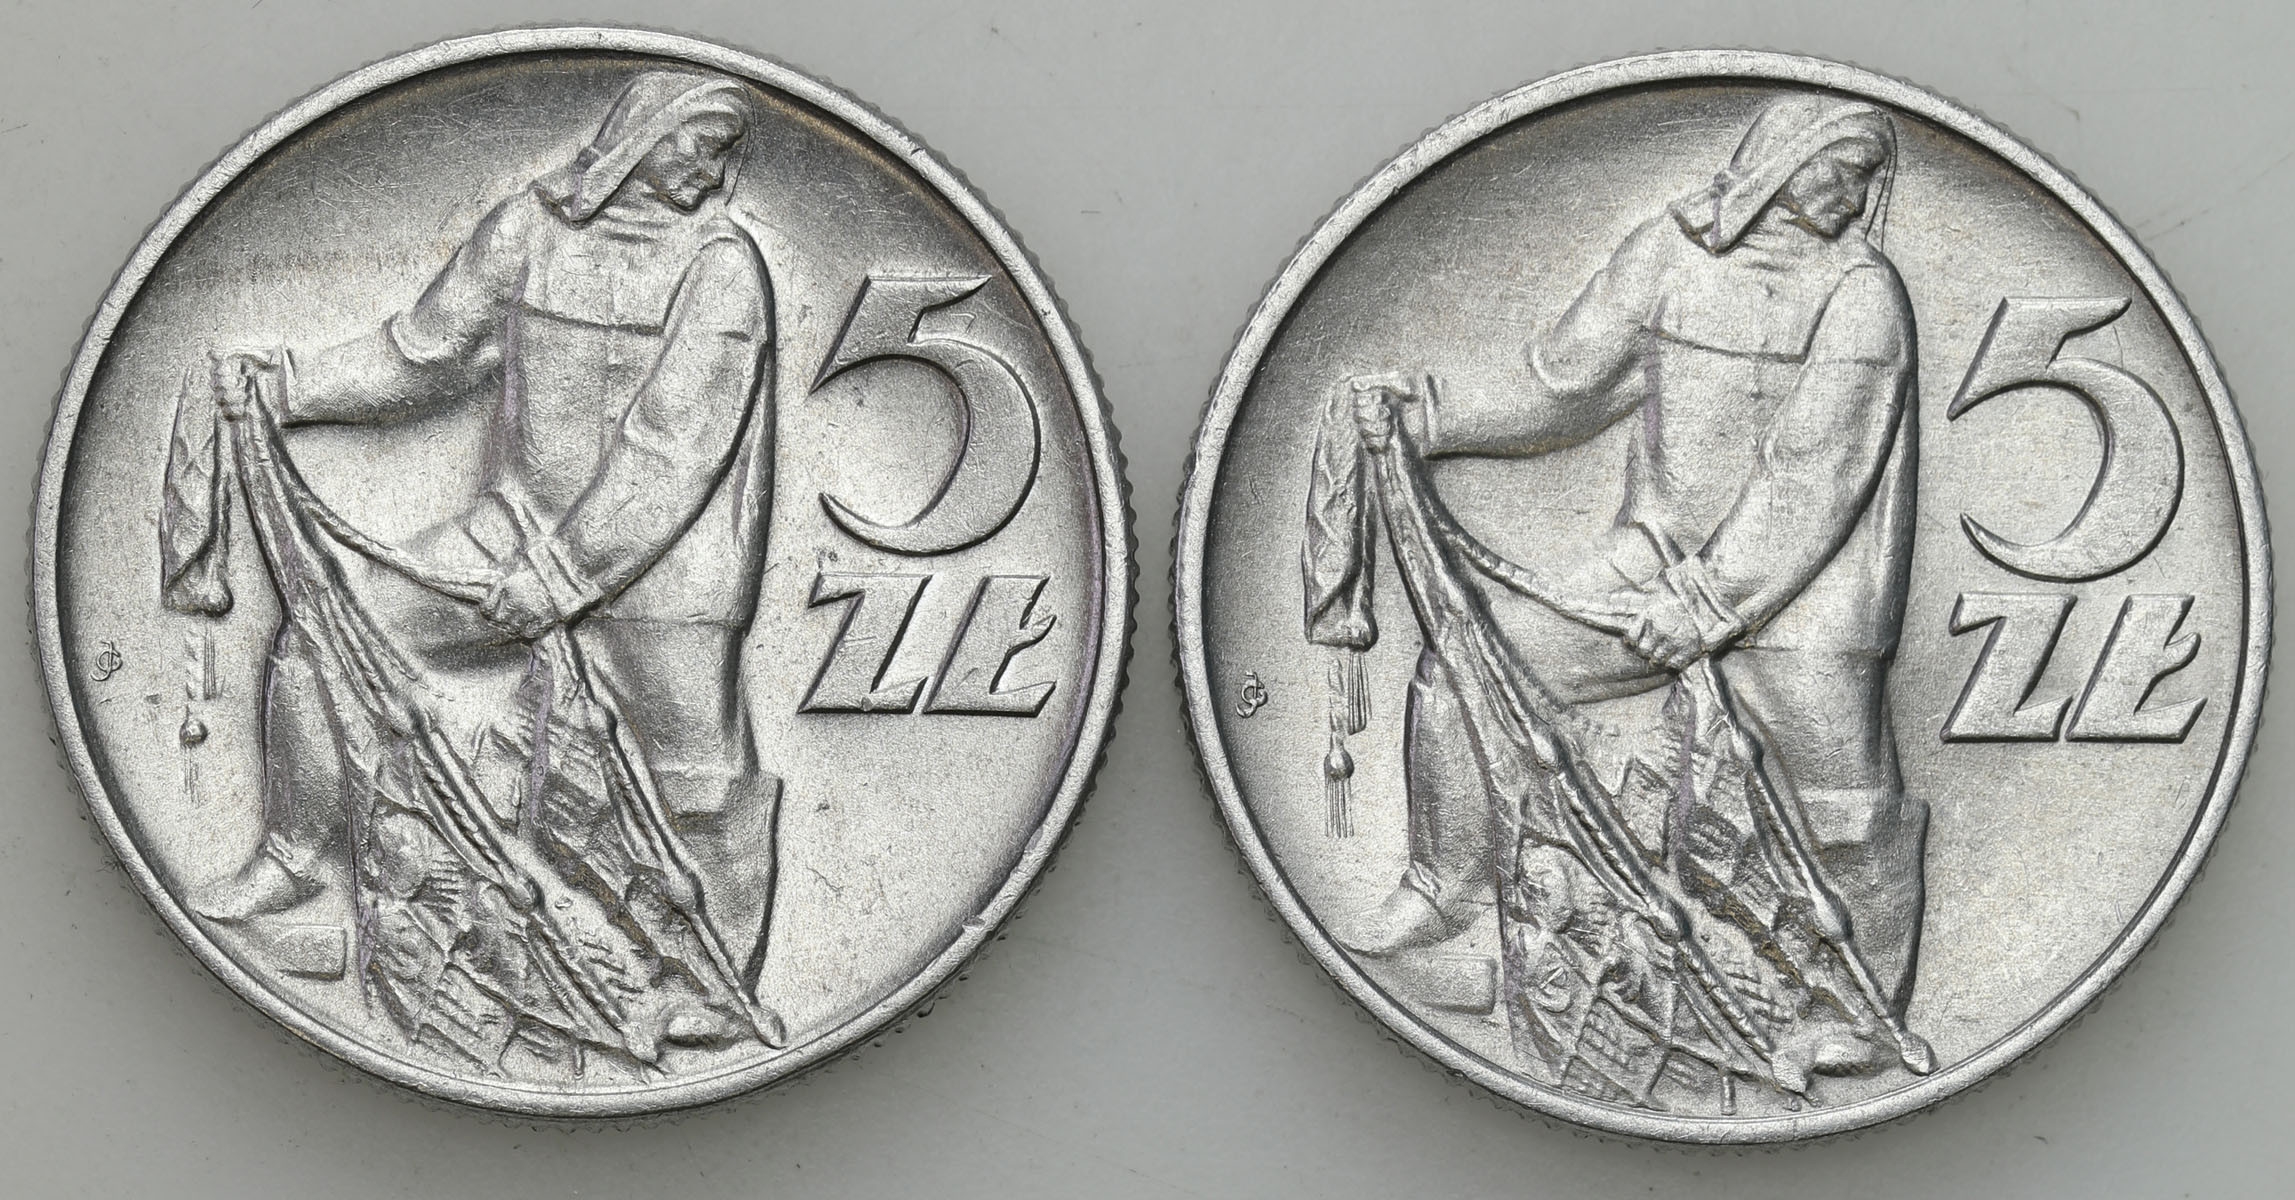 PRL. 5 złotych 1959, 1960, rybak, zestaw 2 monet – PIĘKNE